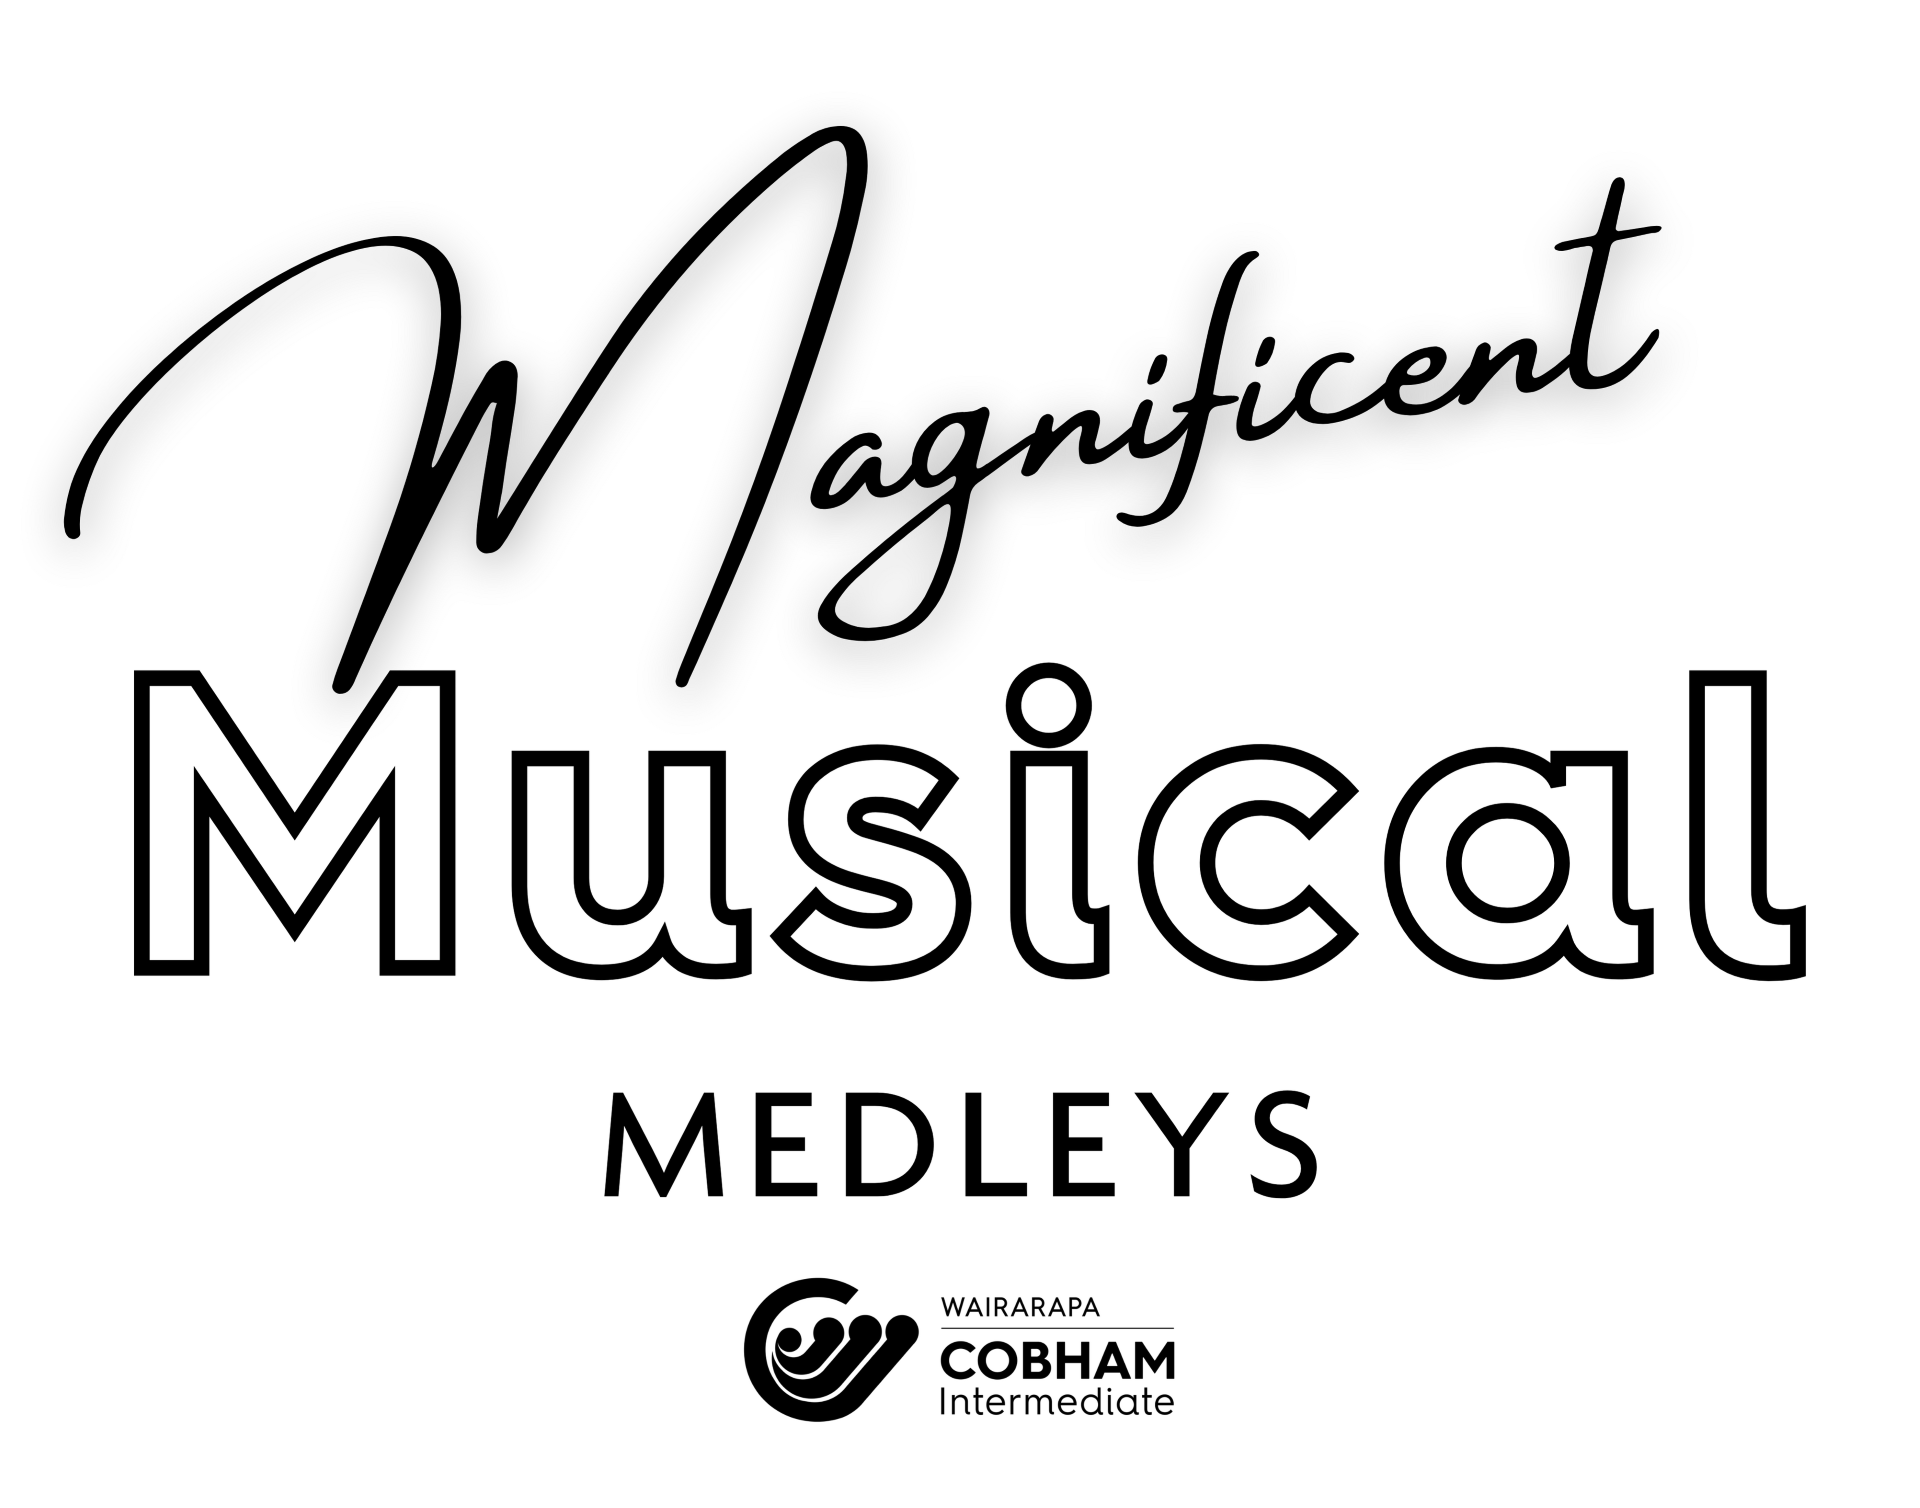 Thumbnail 2023 Musical Branding Logo Black On White 